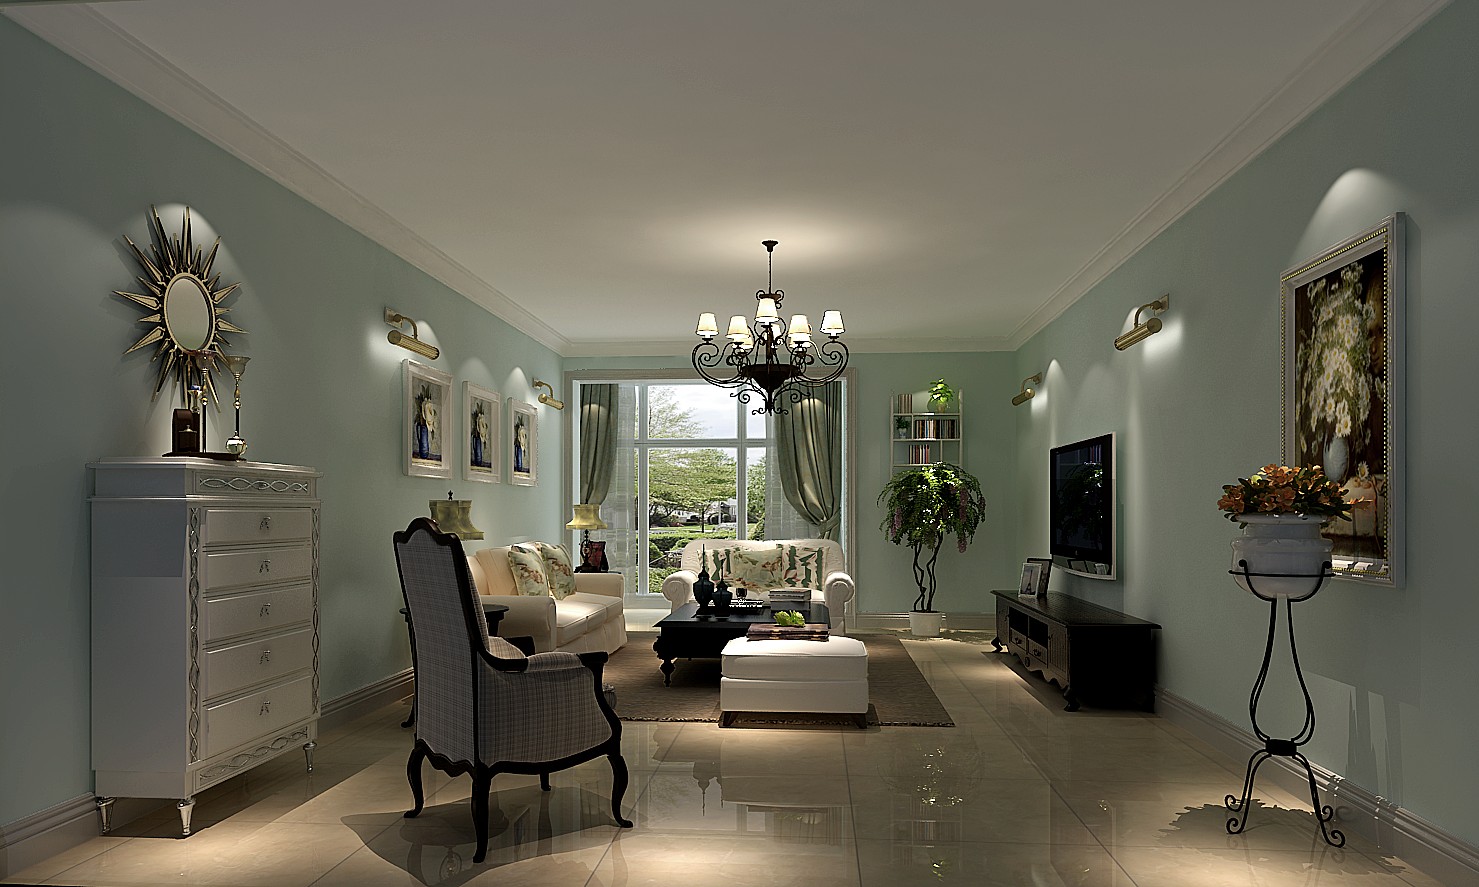 高度国际 简约 混搭 别墅 欧式 客厅图片来自高度国际装饰华华在四合上院的分享